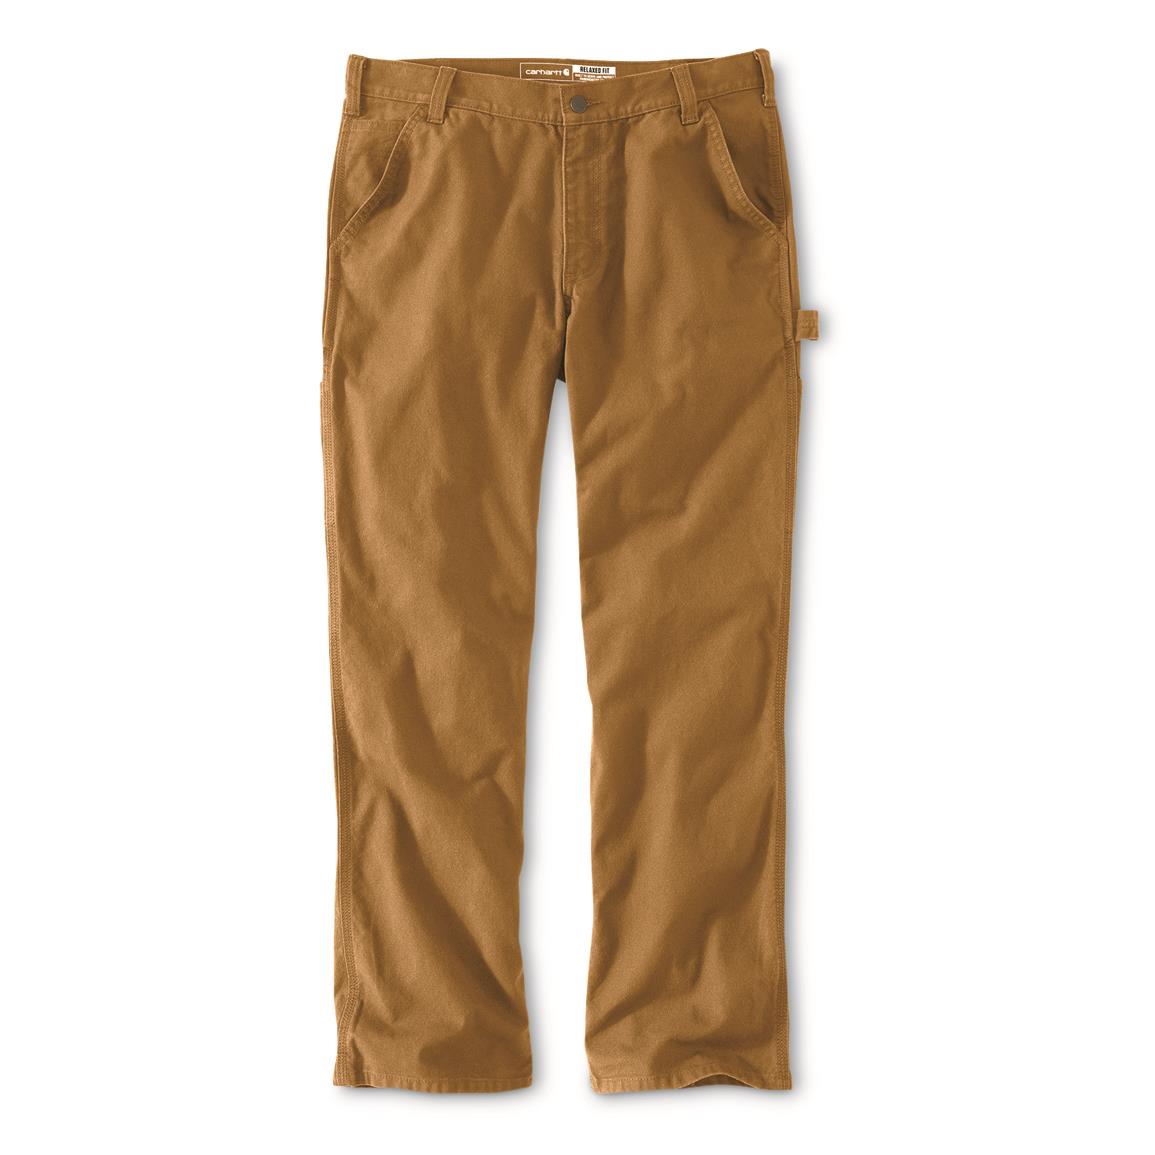 Carhartt Men's Rugged Flex Relaxed Fit Duck Utility Work Pants, Carhartt® Brown